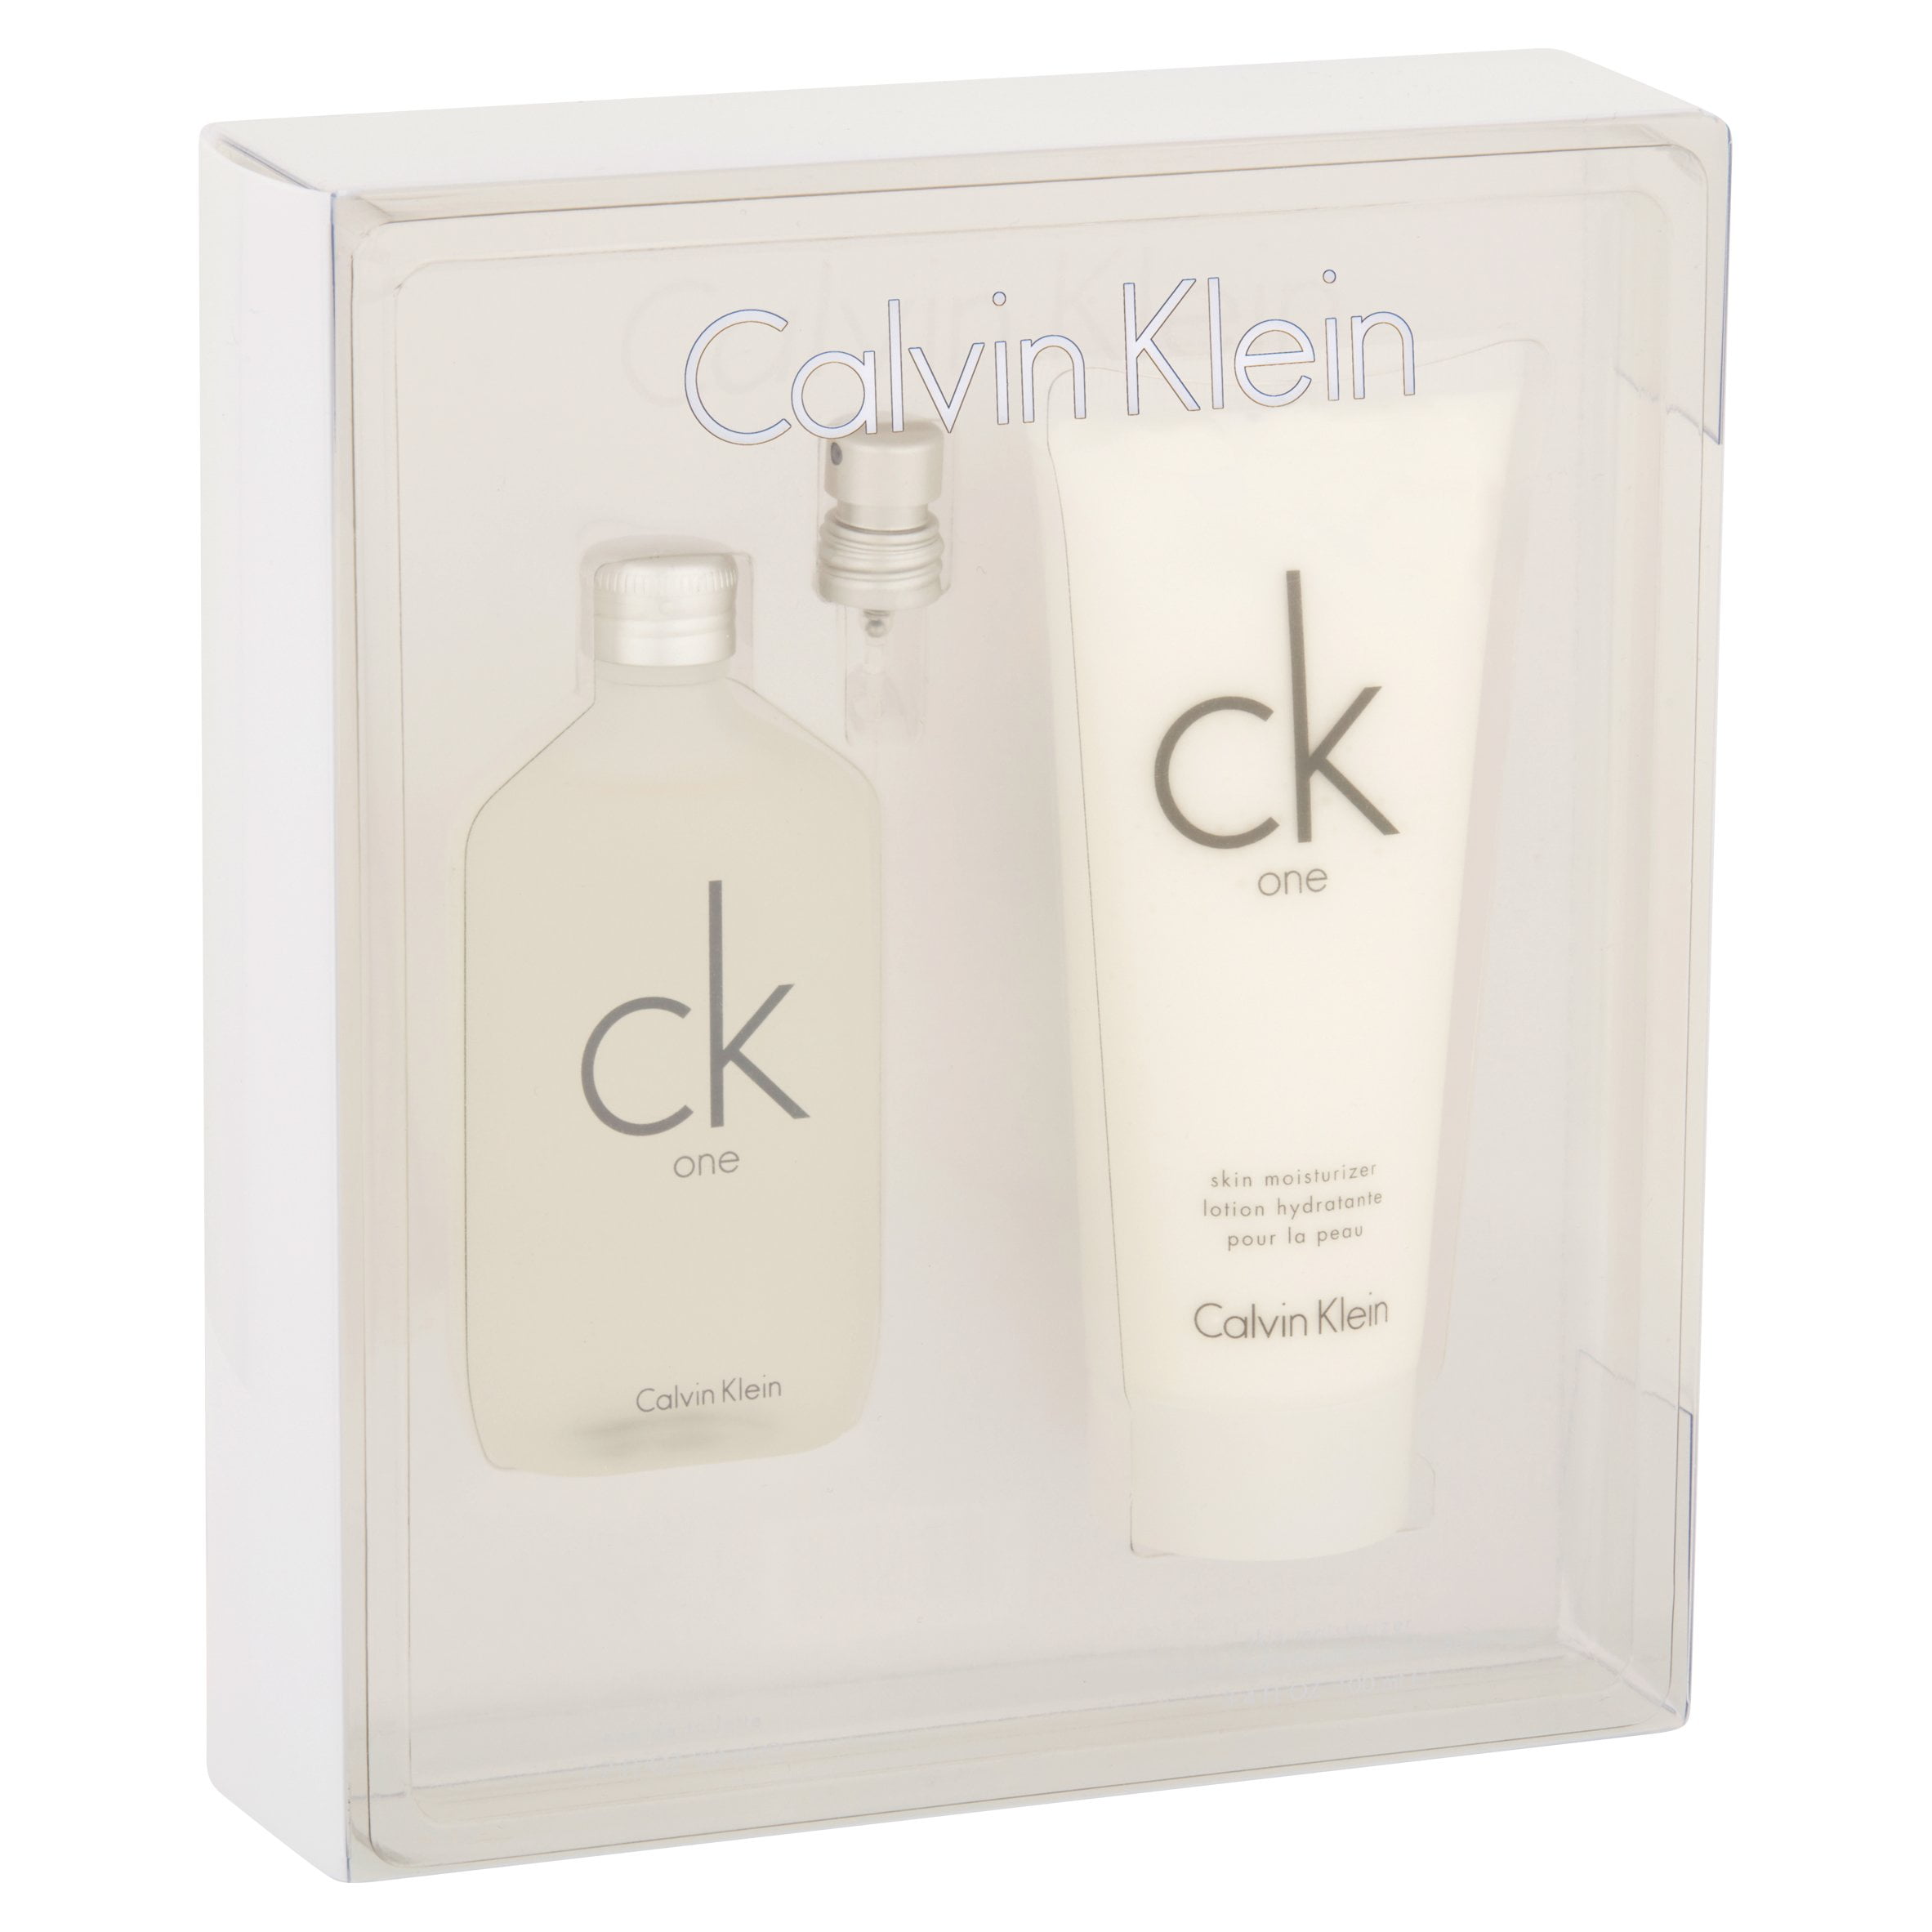 CK One by Calvin Klein, Unisex Gift Set, 2 piece